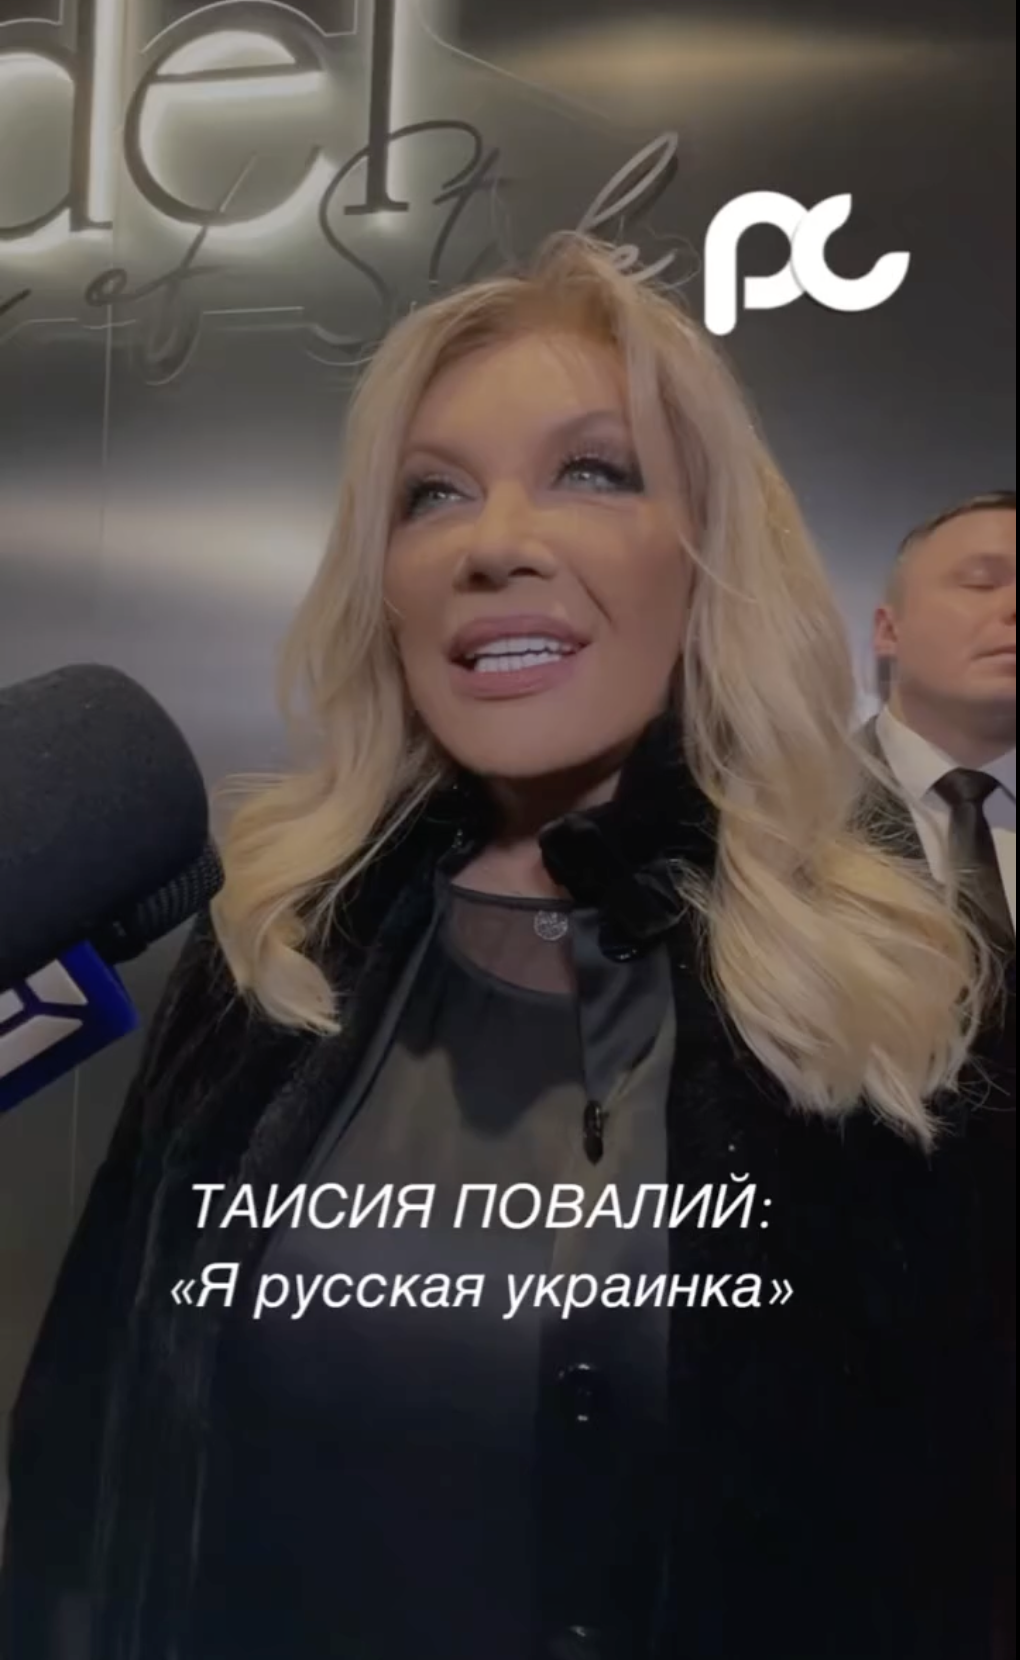 Таїсія Повалій, яка отримала російський паспорт і приховує квартиру в Москві, зробила цинічну заяву про свою національність